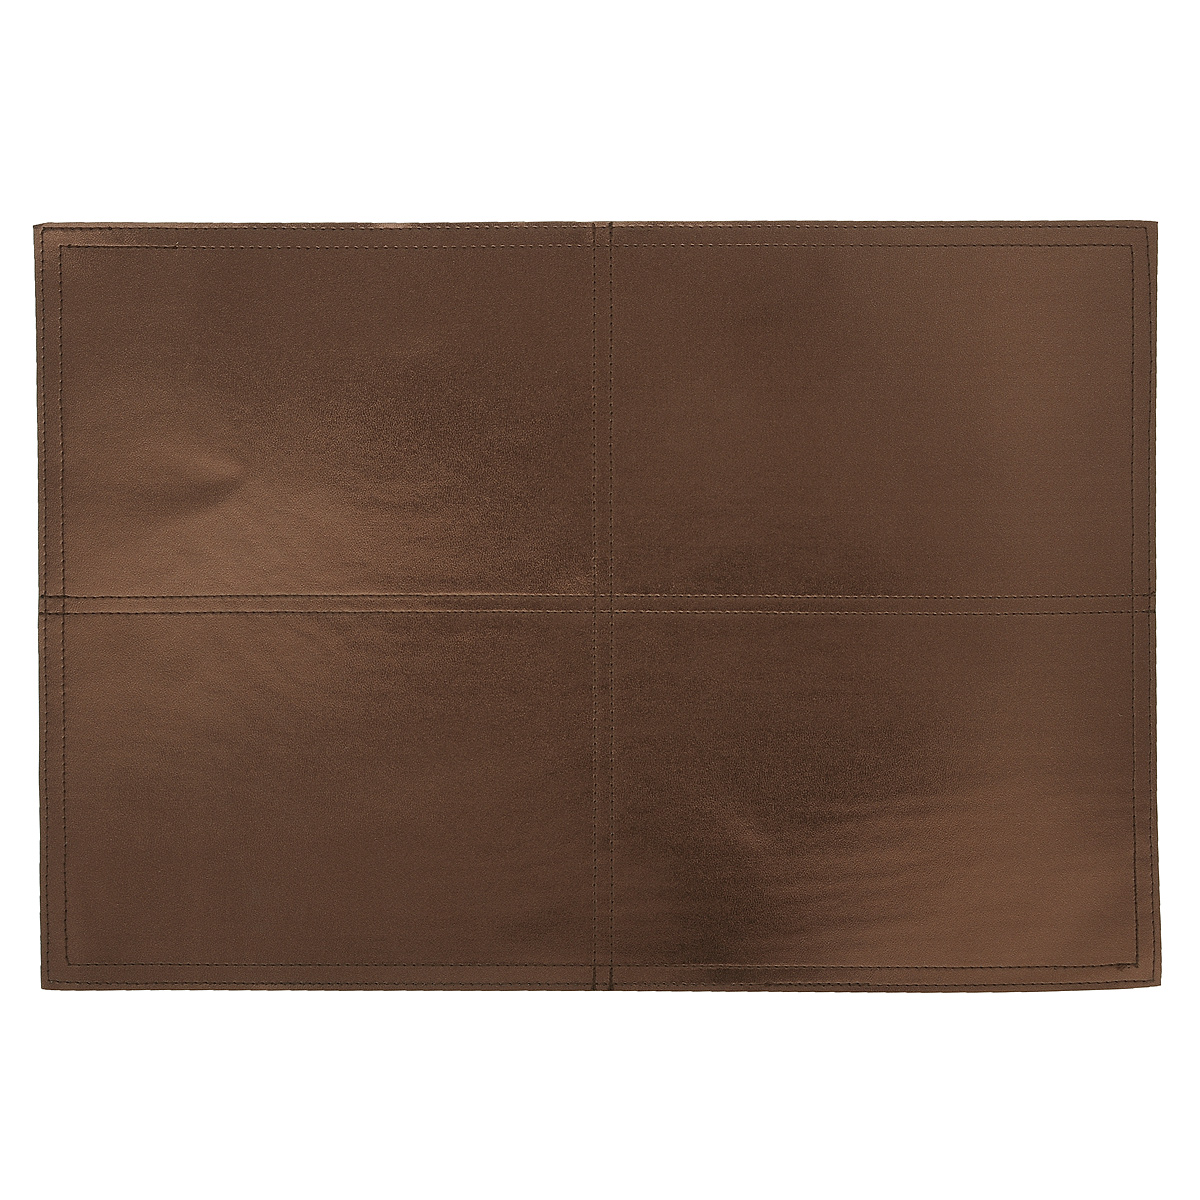 фото Подставка под горячее "Hans & Gretchen", цвет: золотисто-коричневый, 43 х 30 см. 28HZ-9027